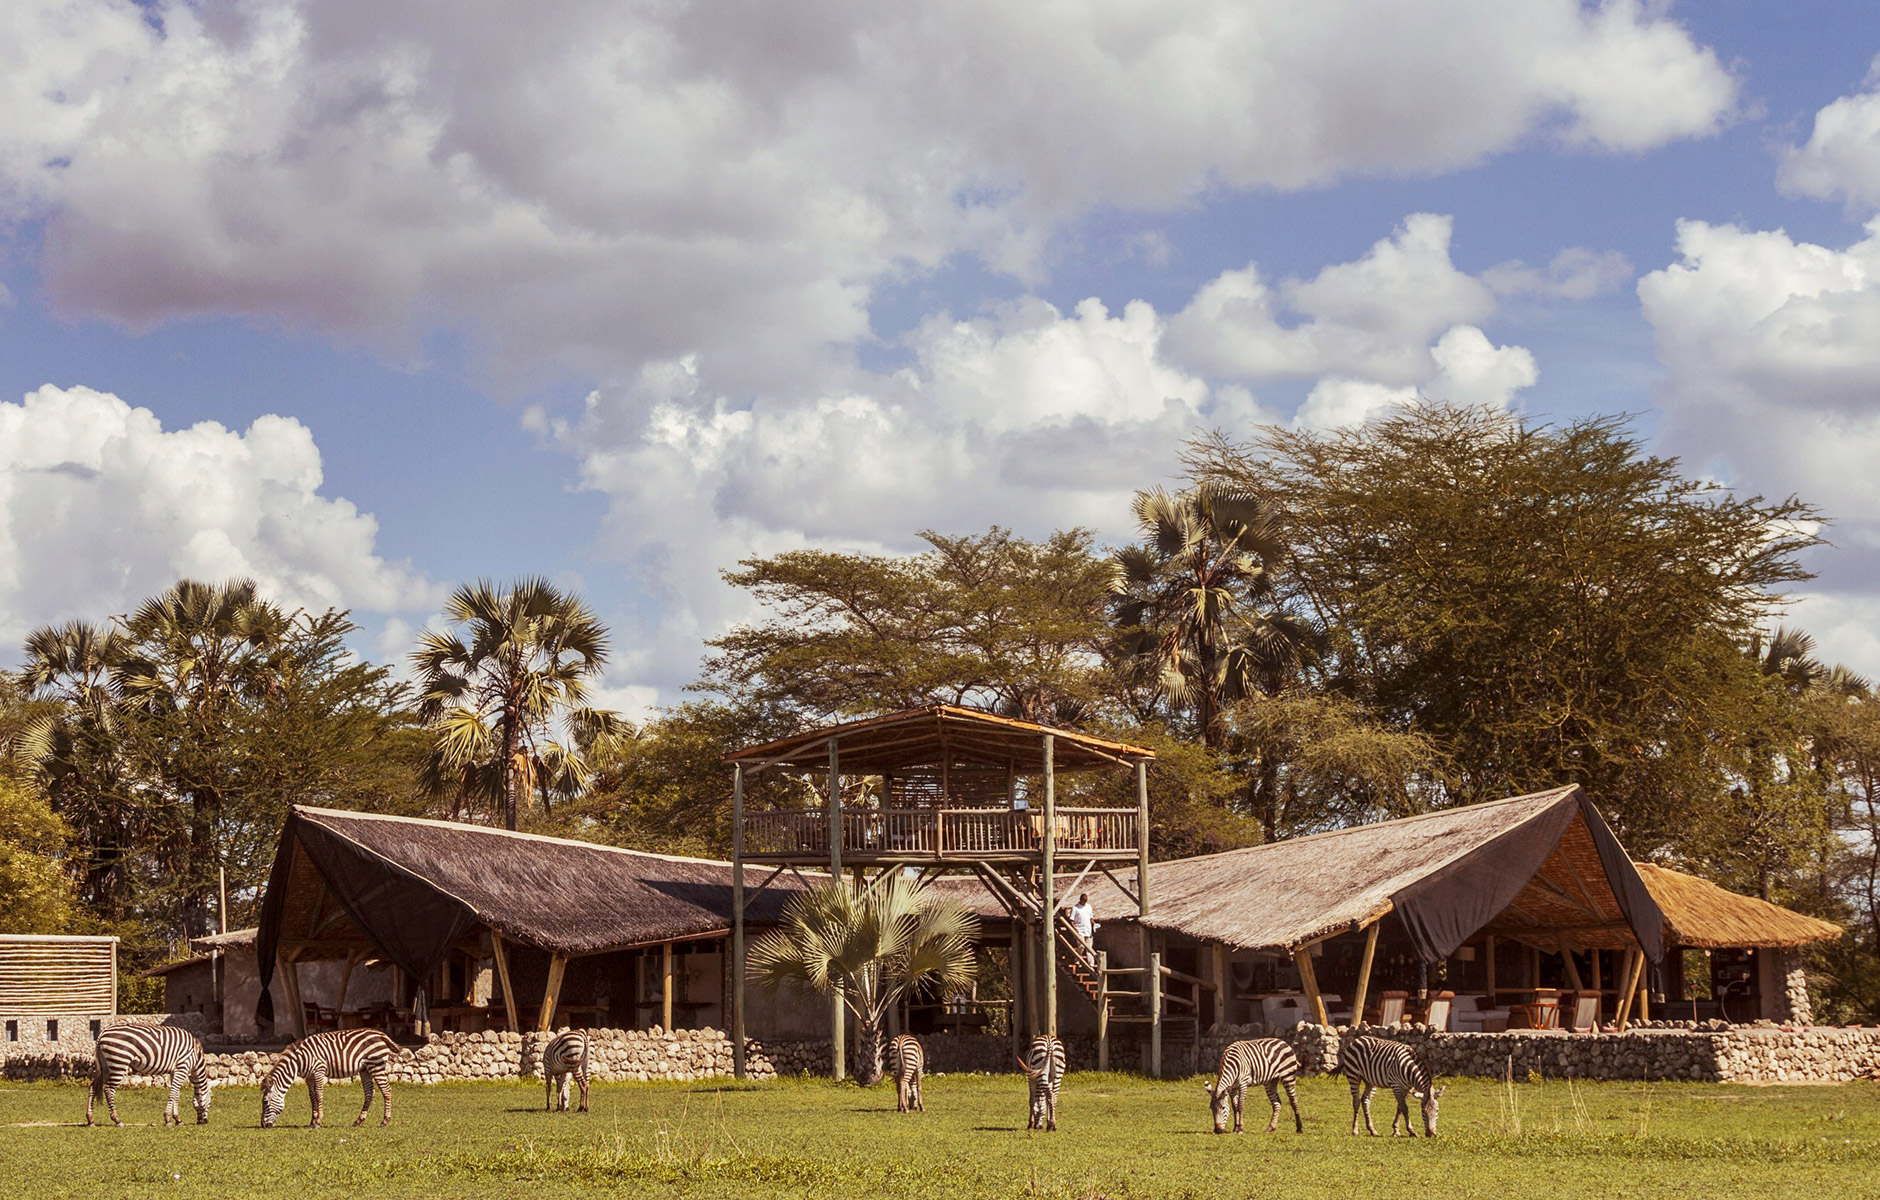 Außenansicht der Lodge mit grasenden Zebras